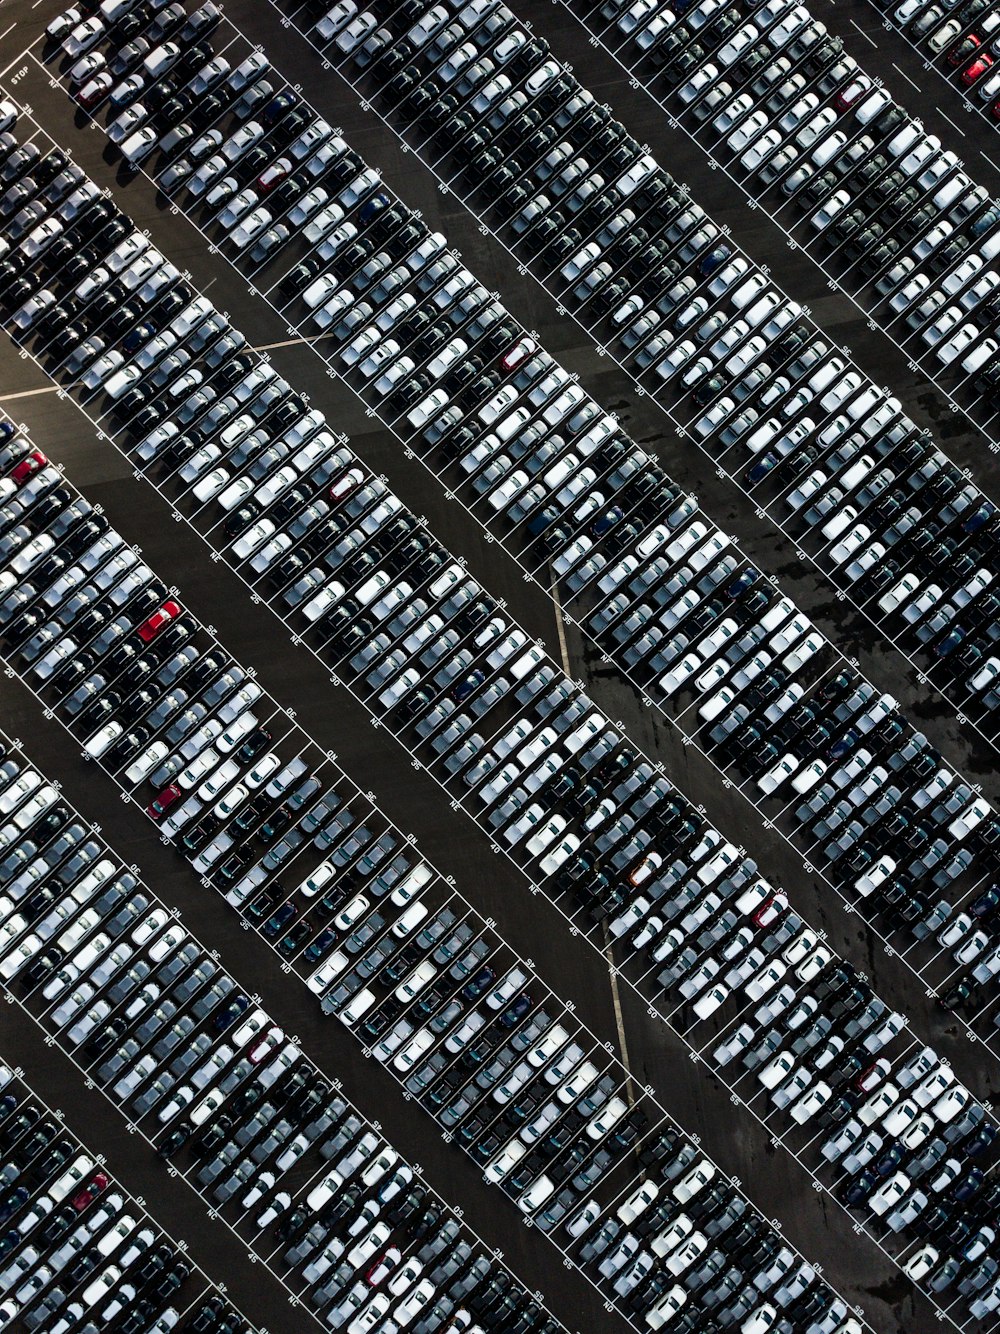 Photographie aérienne d’un parking